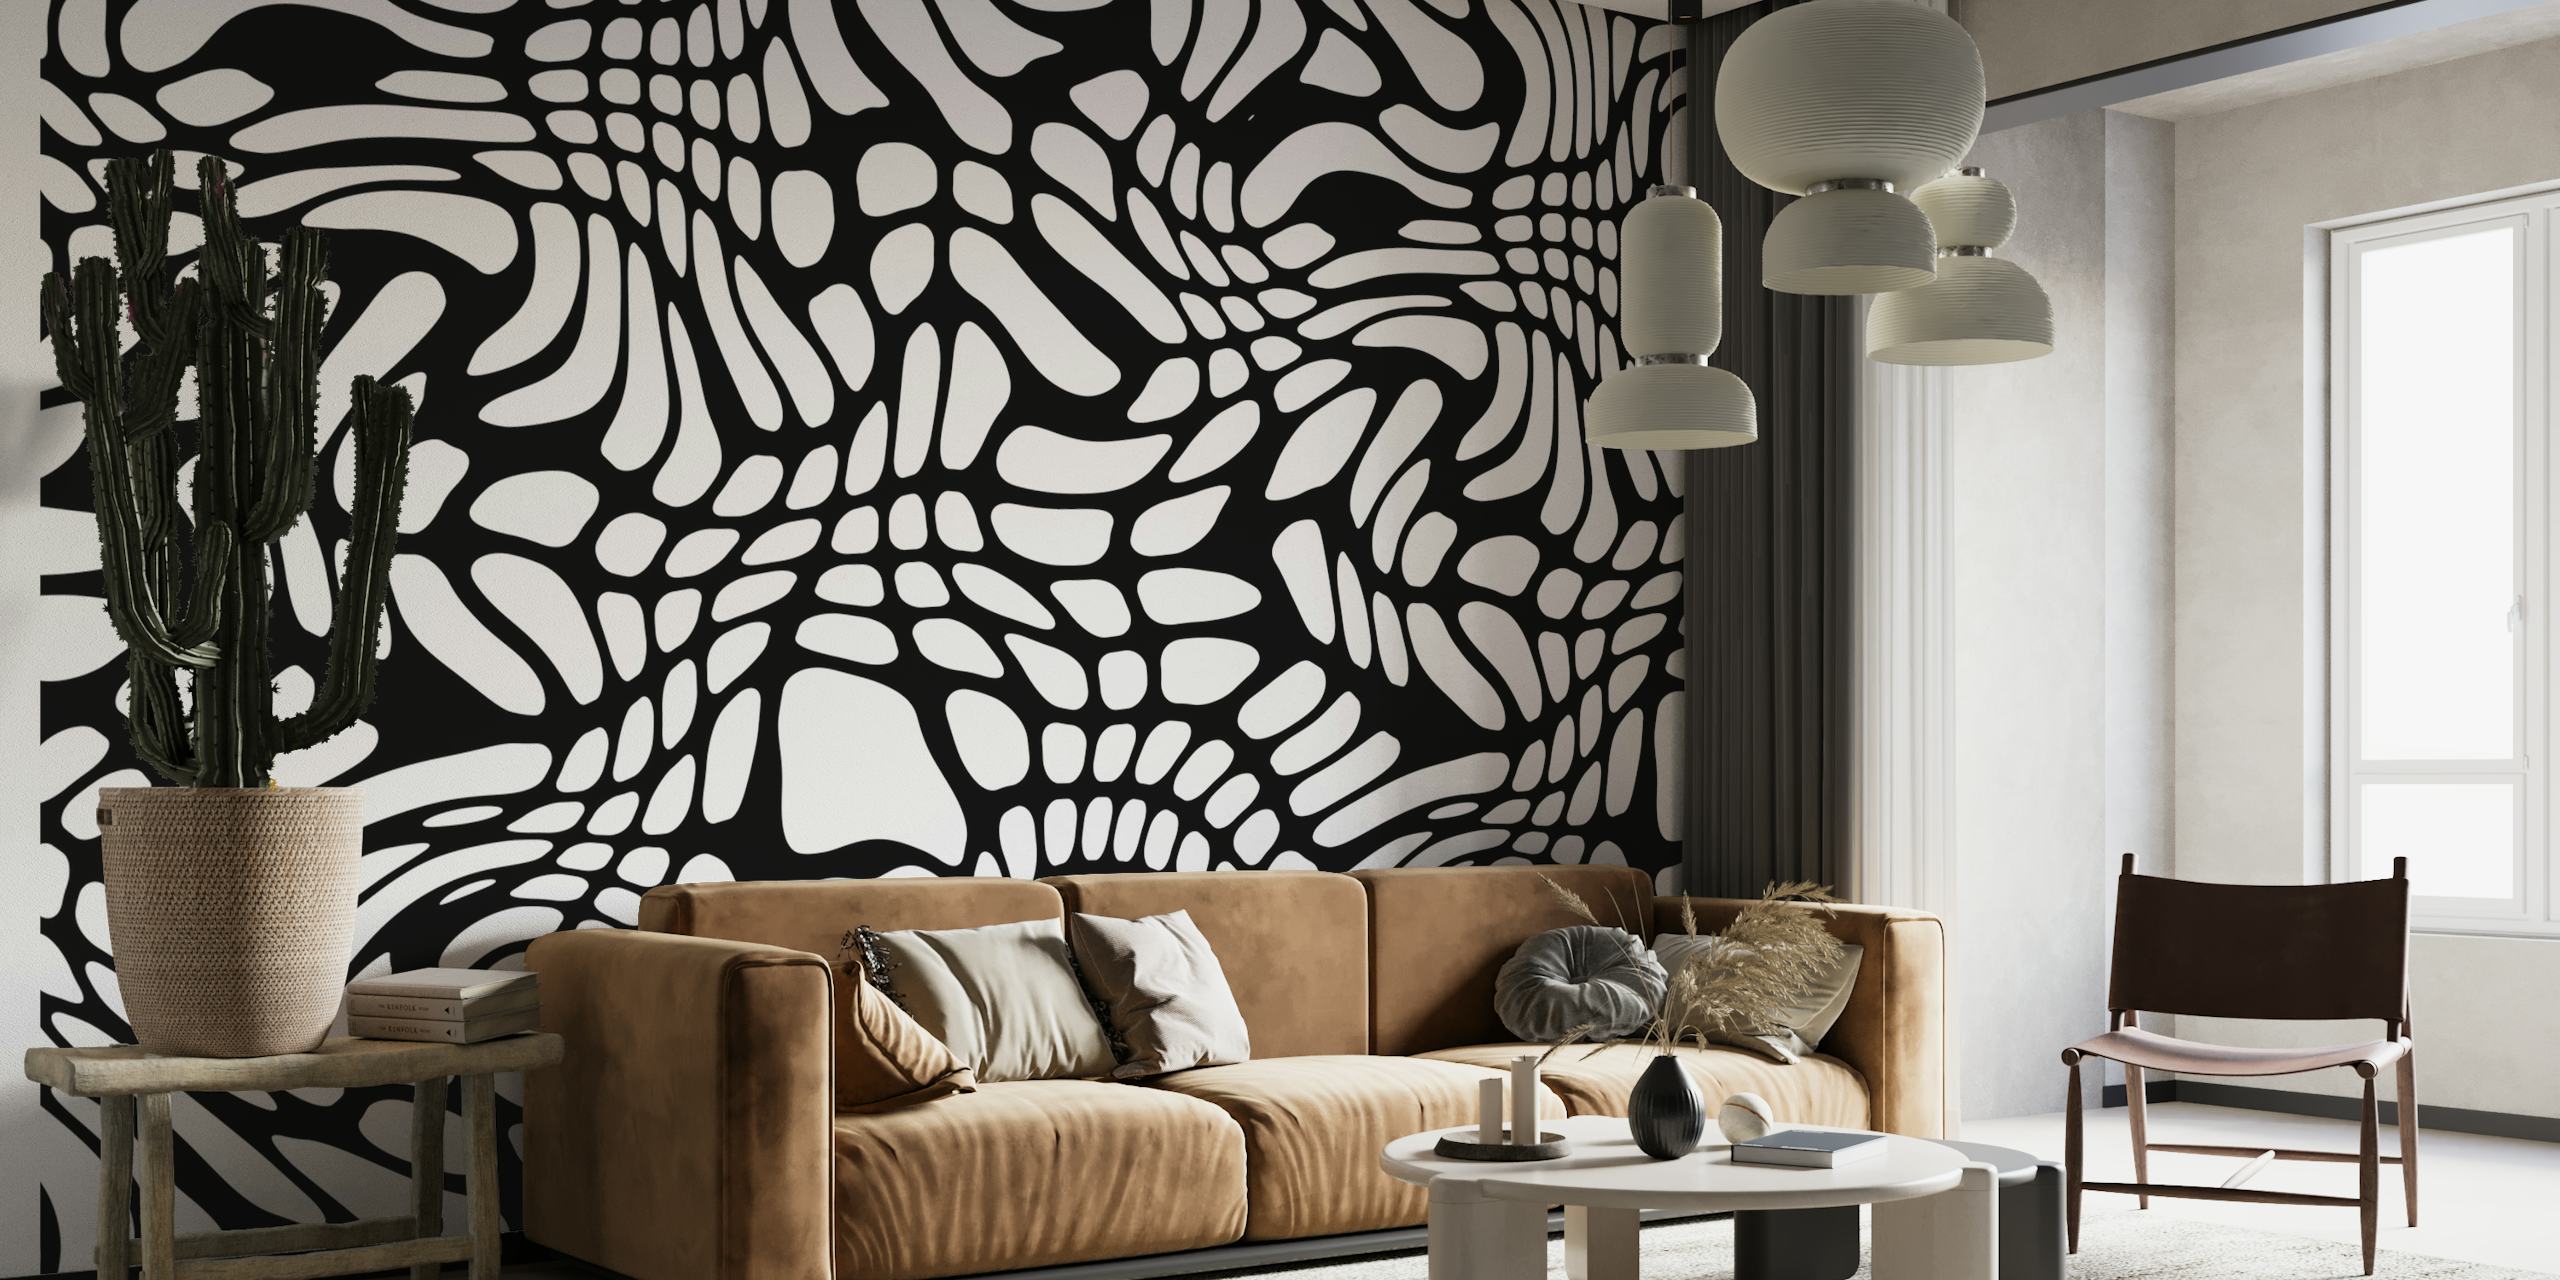 Fotomural de formas abstractas en blanco y negro para una decoración interior moderna